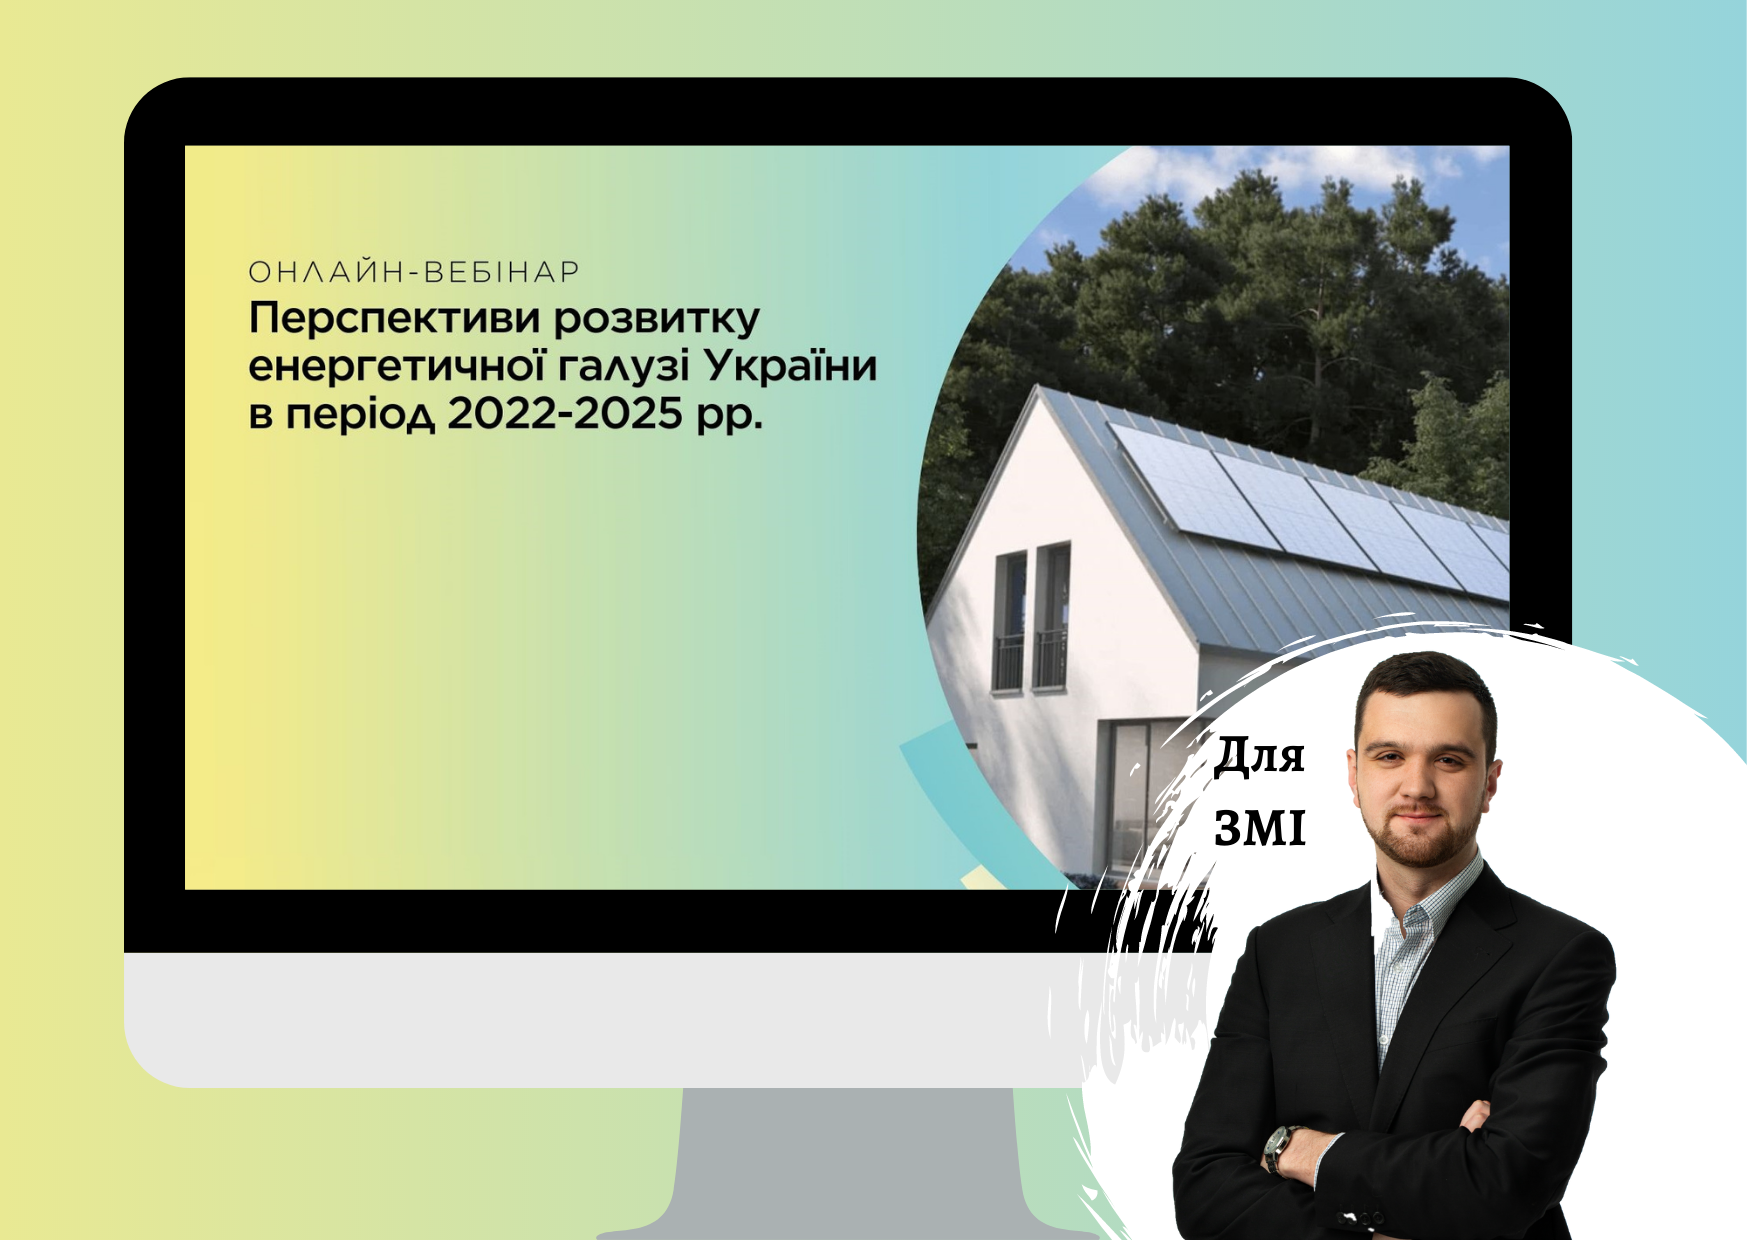 Андрій Мокряков, старший консультант Pro-Consulting, взяв участь у вебінарі «Перспективи розвитку енергетичної галузі України».